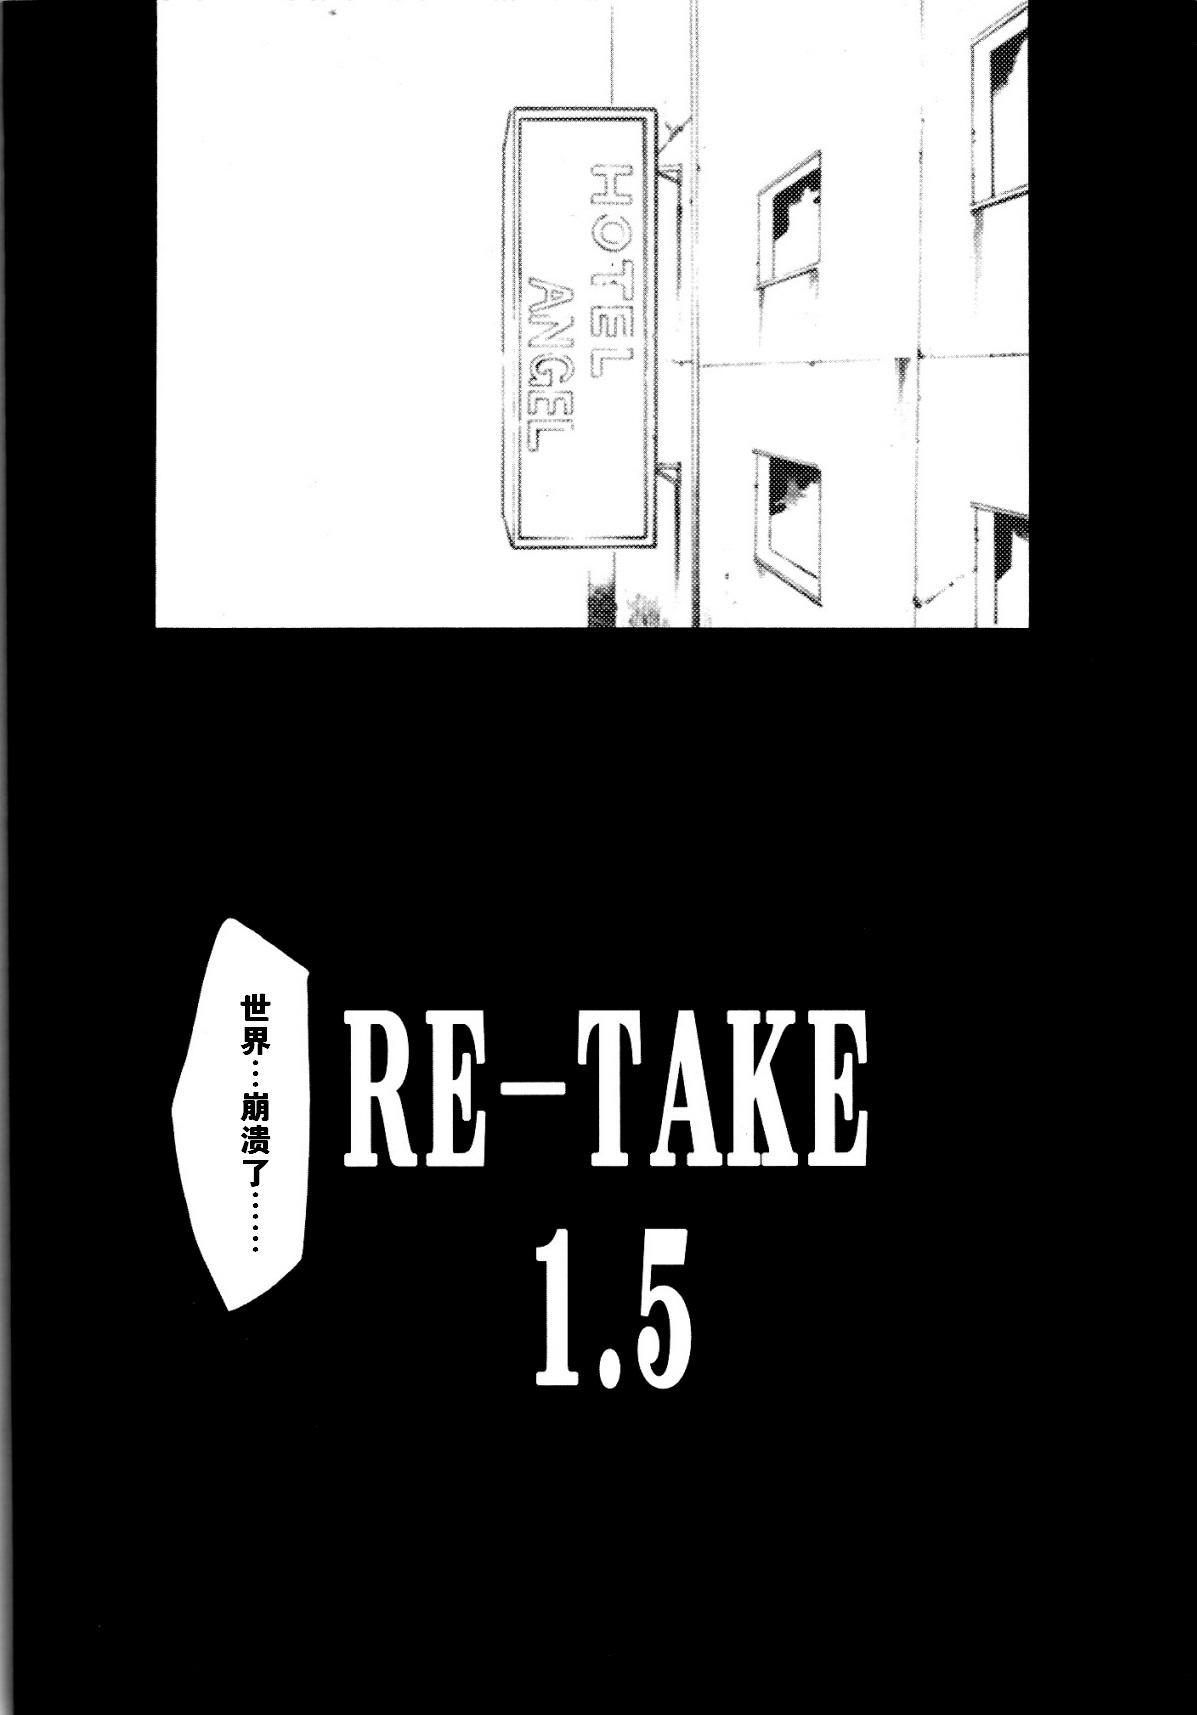 RE-TAKE 1.5 2